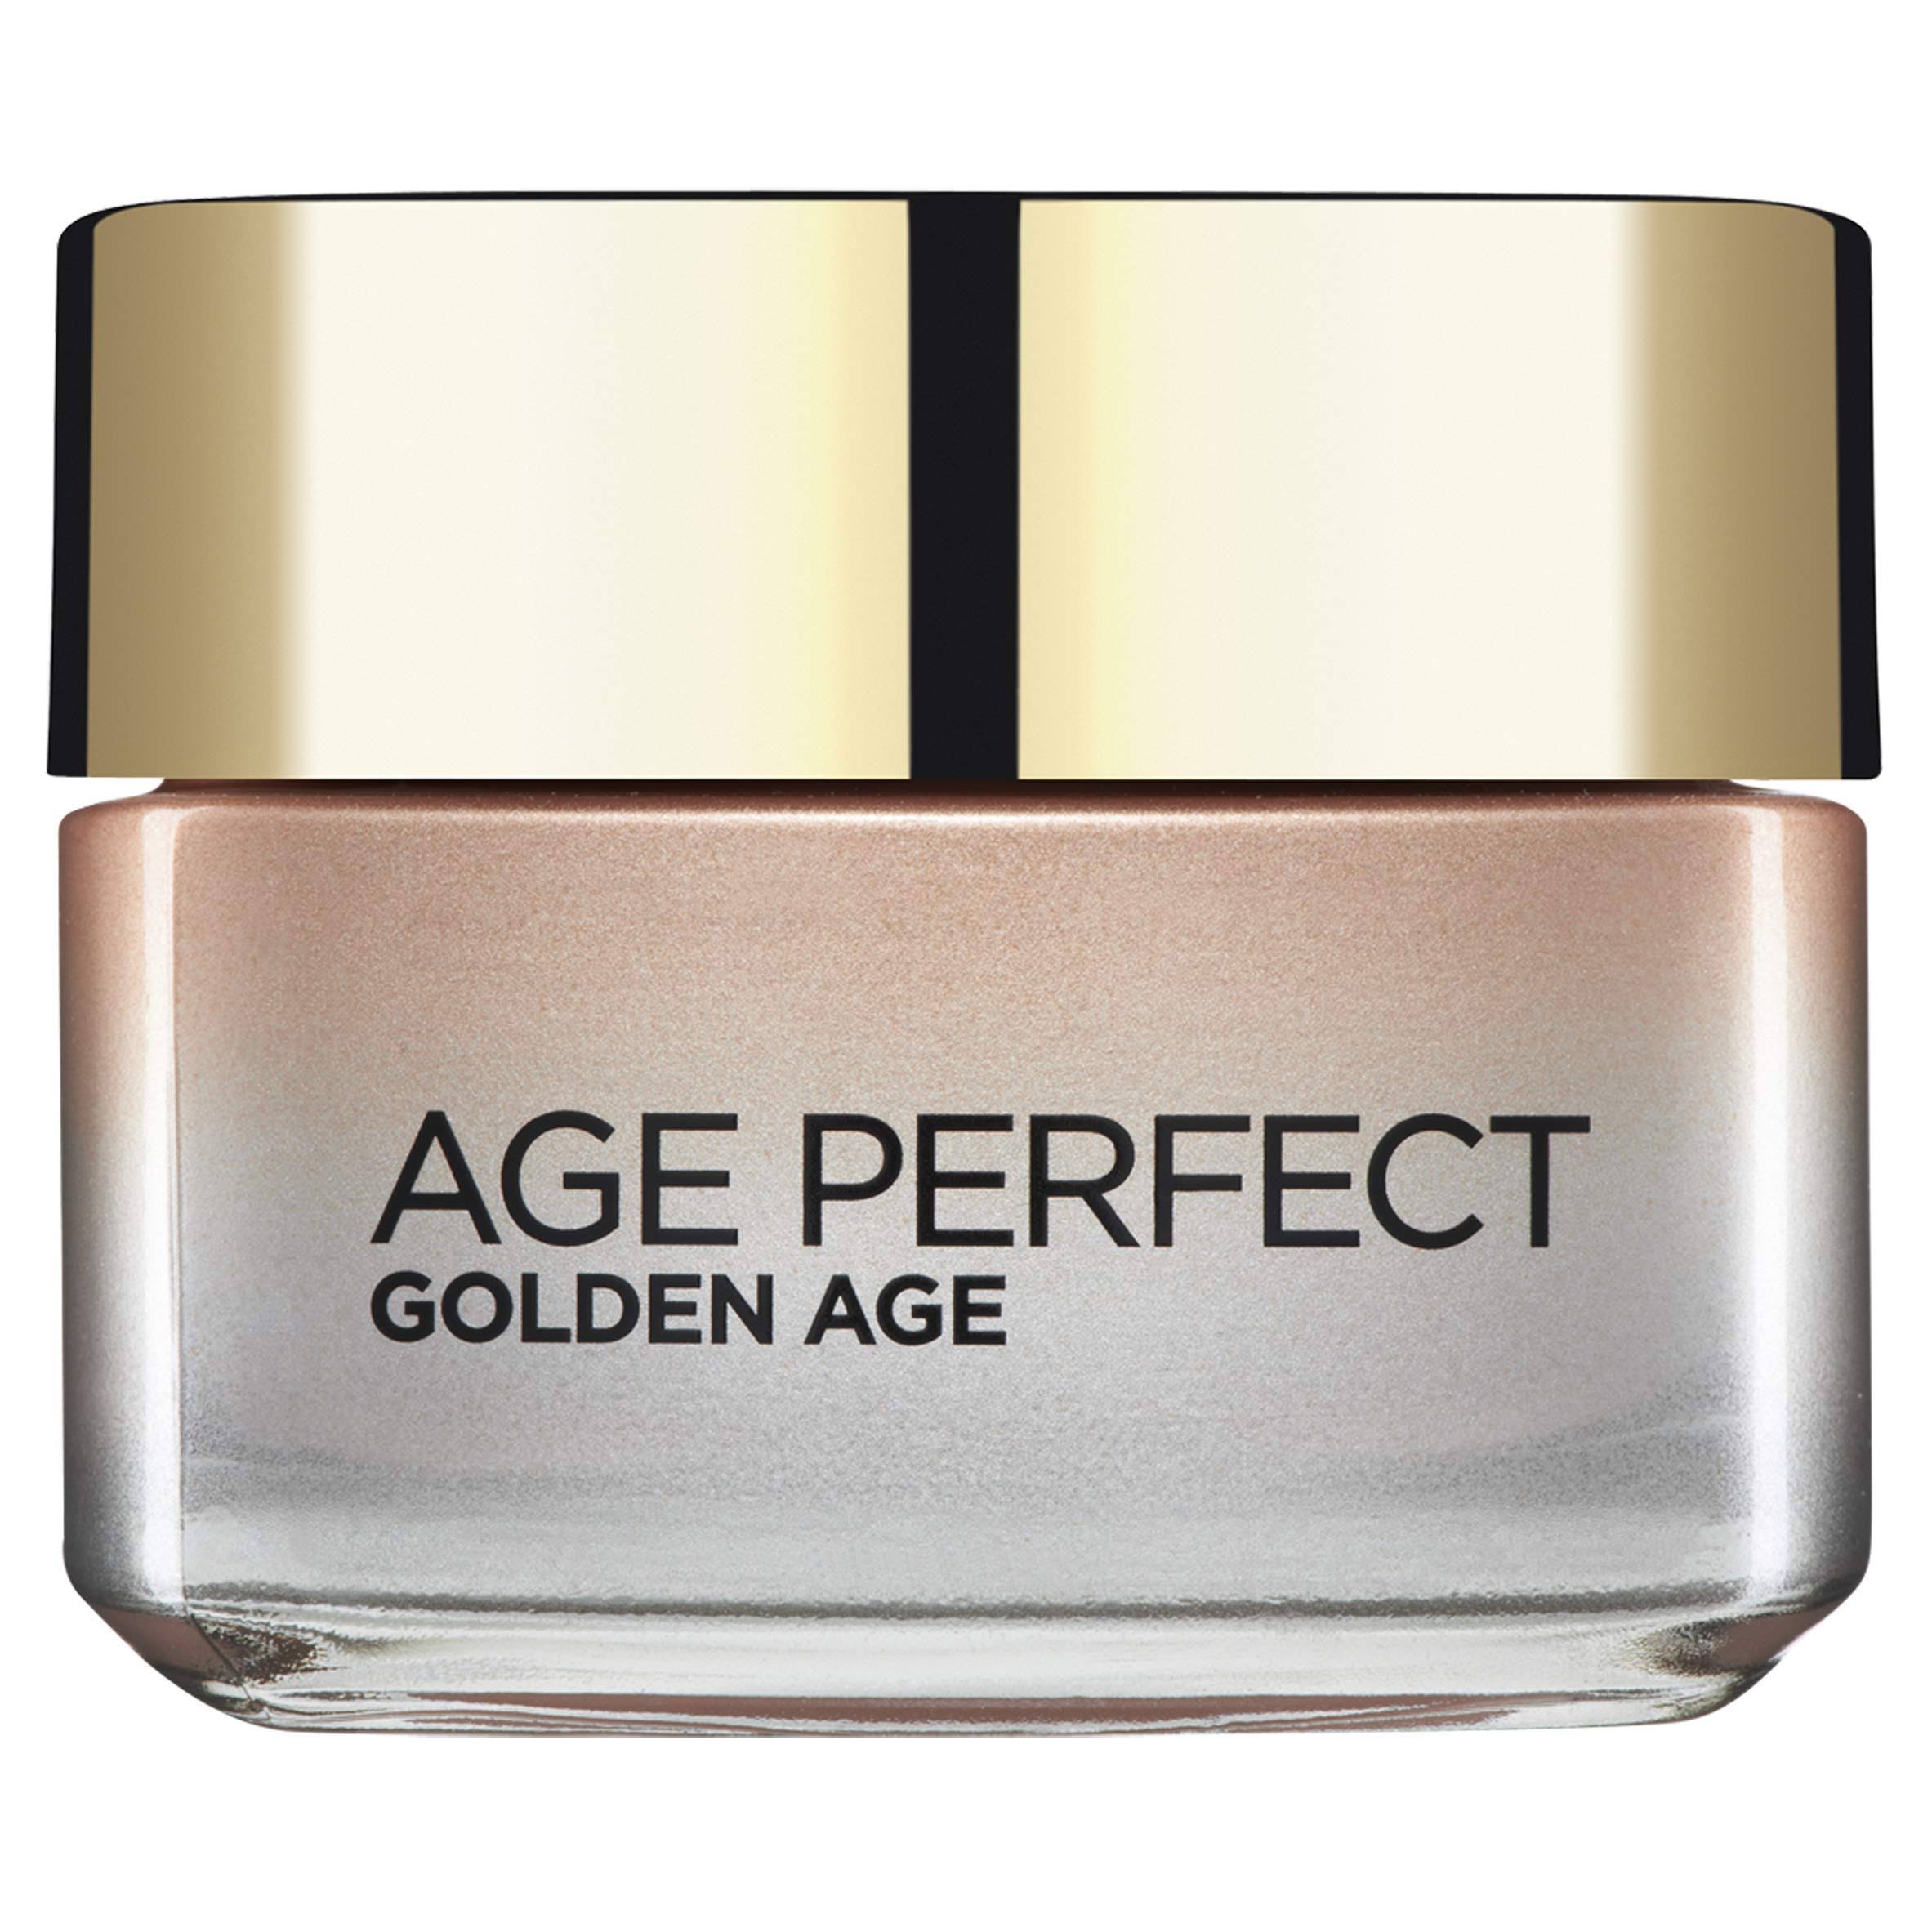 L'Oreal Paris Age Perfect Golden Age Day Cream - 50ml